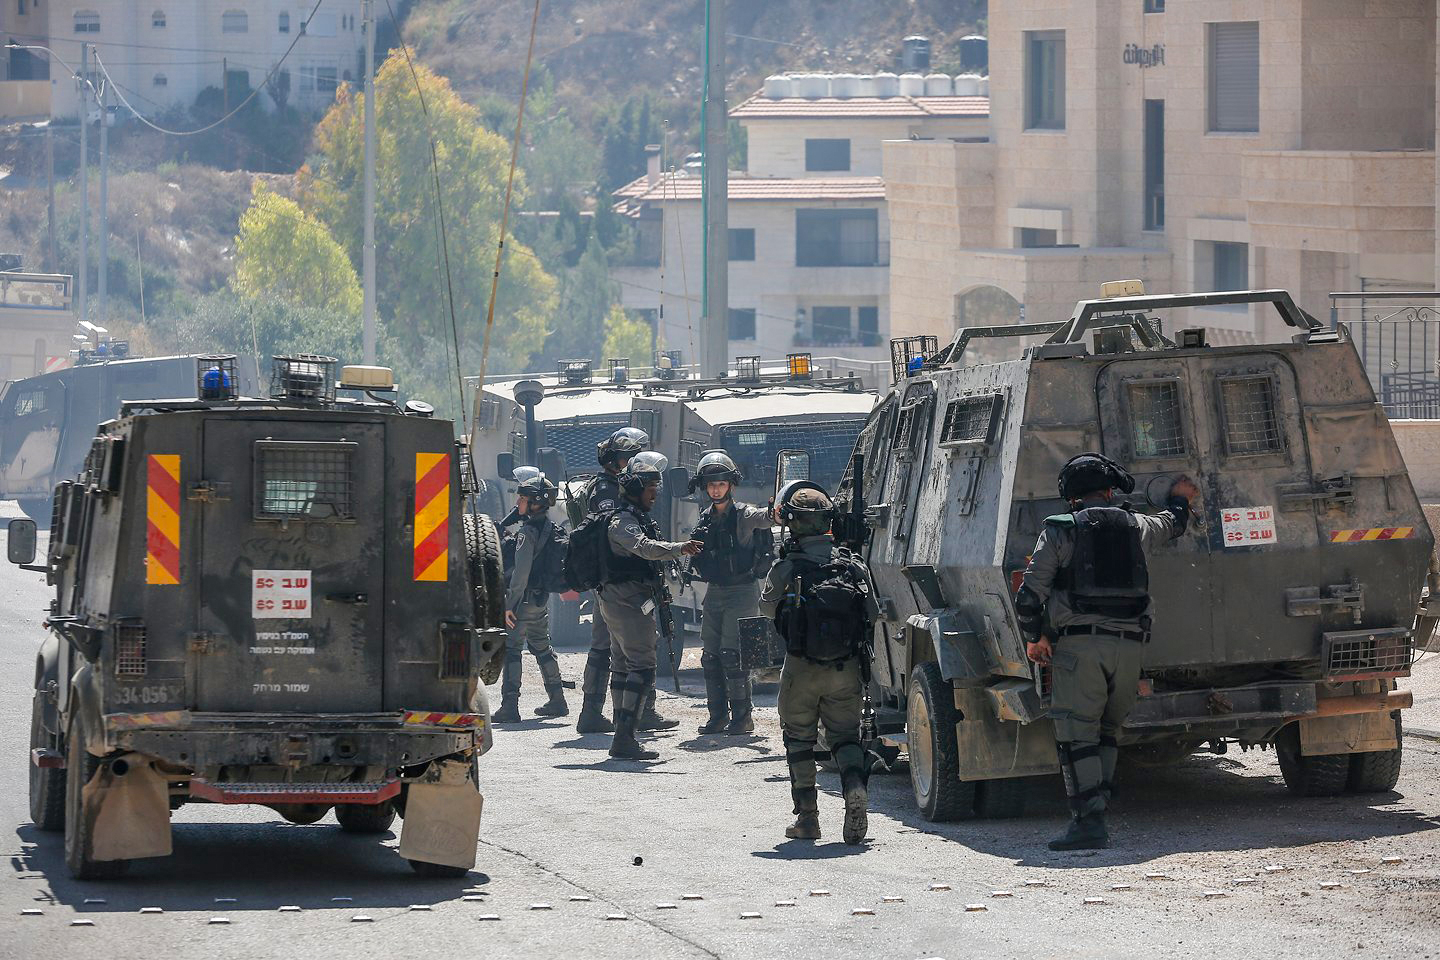 L'armée israélienne prend d’assaut Tubas en Cisjordanie occupée